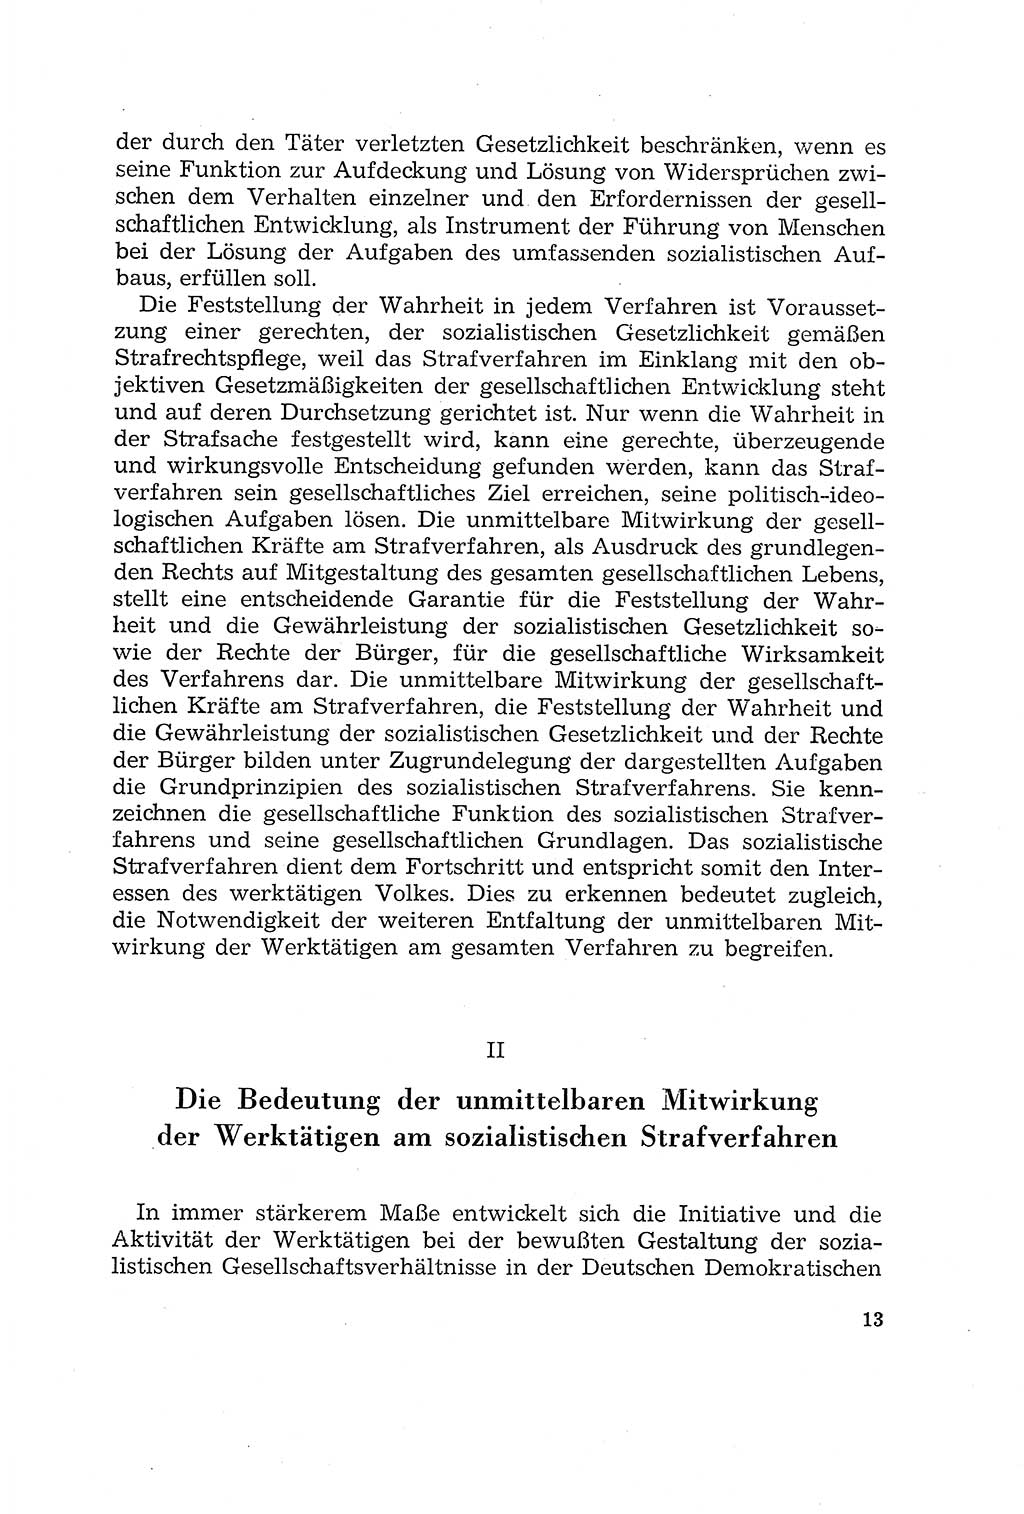 Die Mitwirkung der Werktätigen am Strafverfahren [Deutsche Demokratische Republik (DDR)] 1966, Seite 13 (Mitw. Str.-Verf. DDR 1966, S. 13)